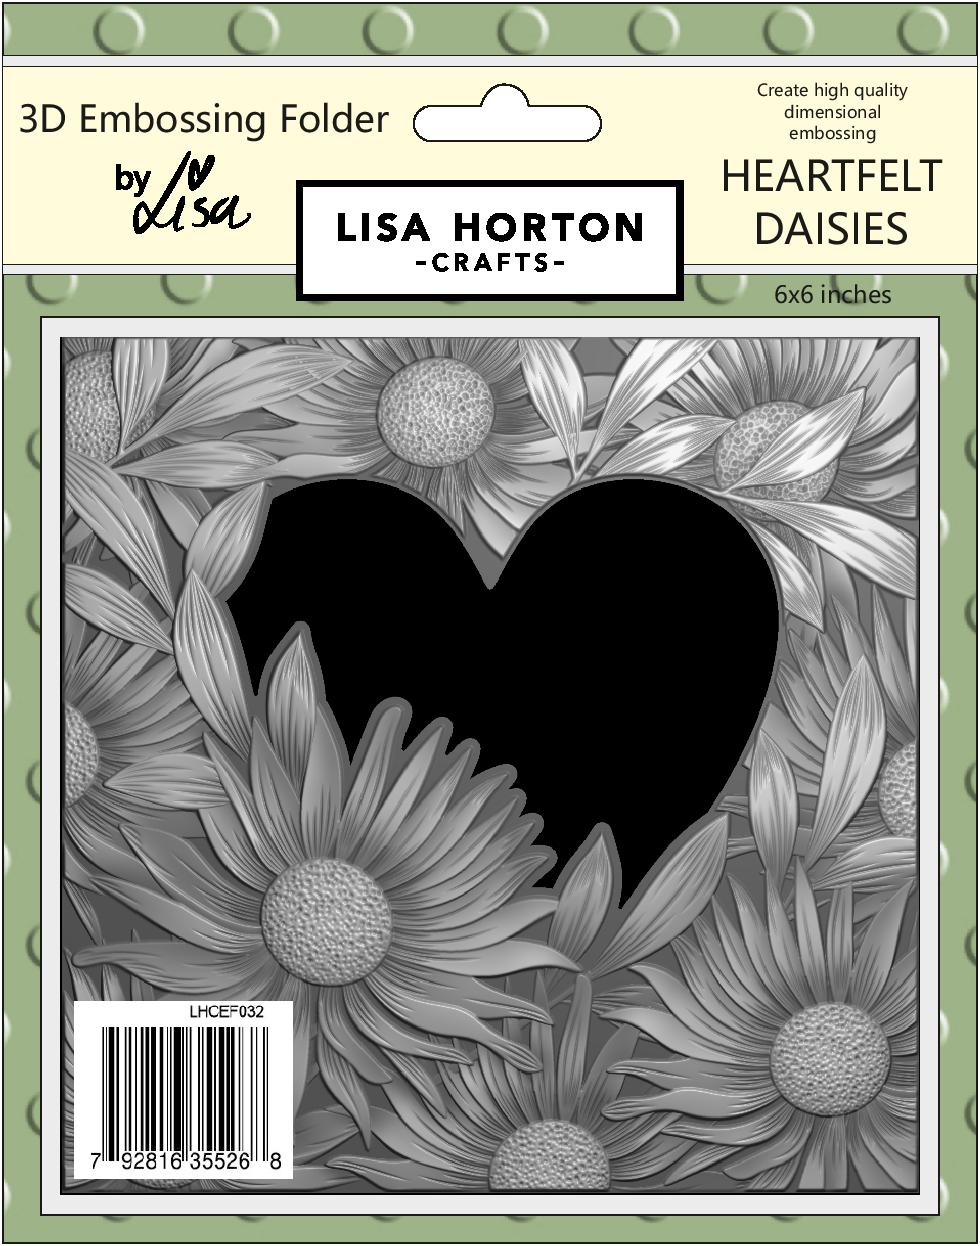 Lisa Horton Crafts 6x6 3D Embossing Folder - Heartfelt Daisies